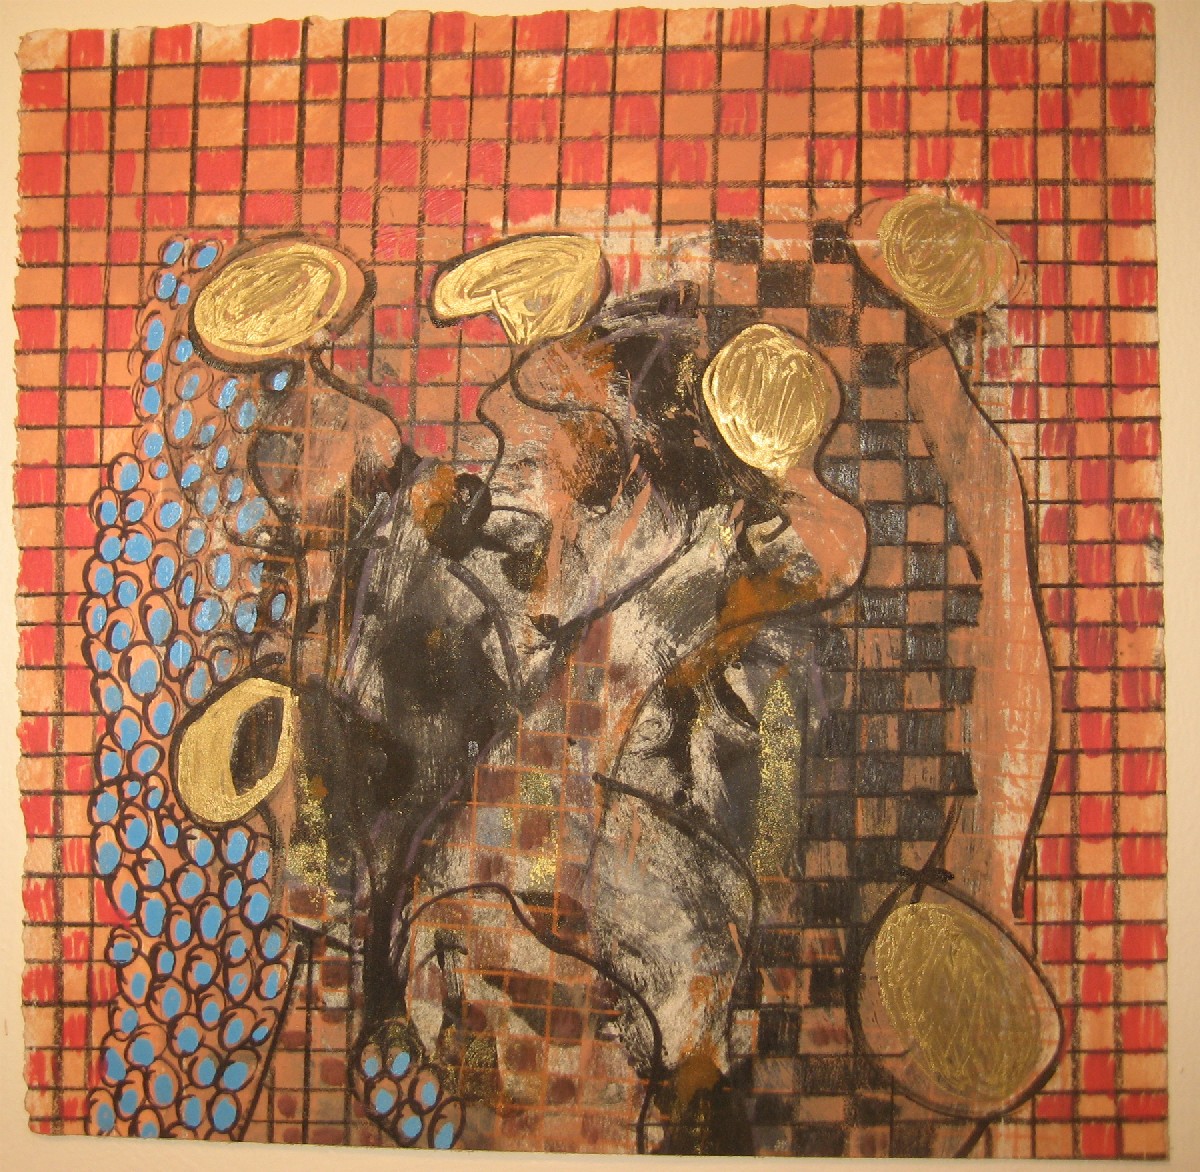 Fay Grajowe "Figure with gold and red grid", materiał udostępniony przez organizatora